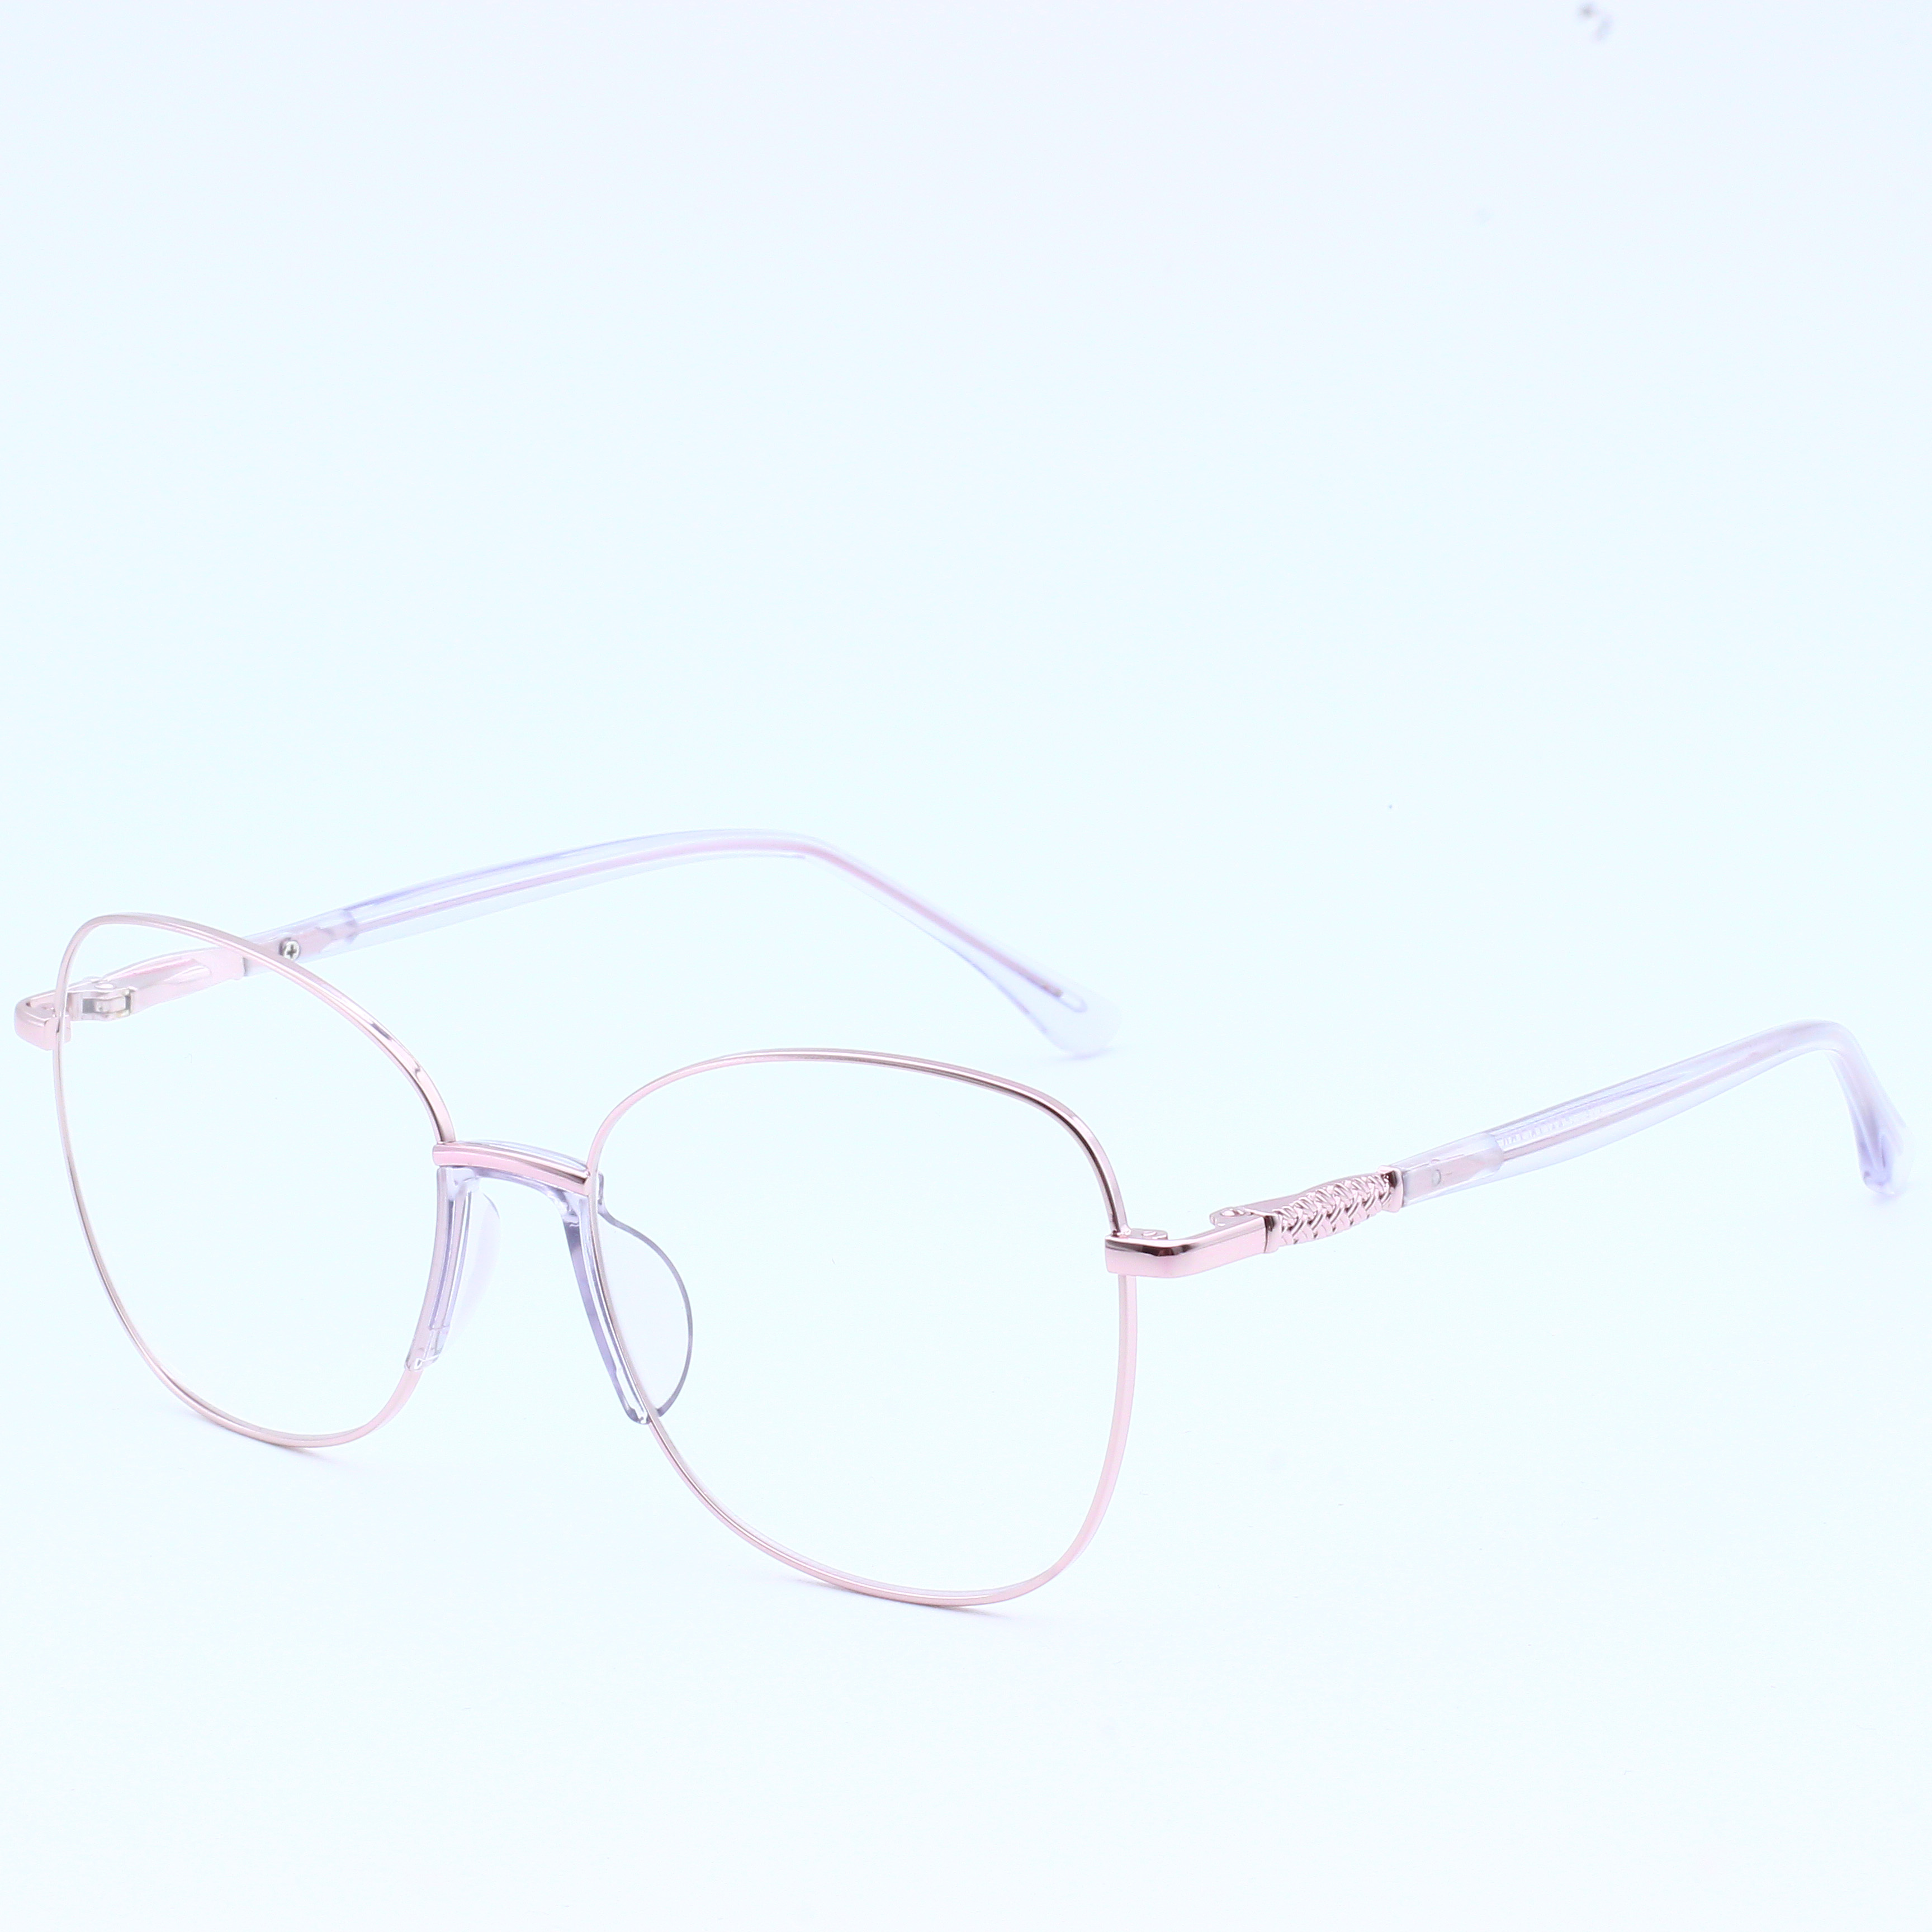 Designer Brand Metal Wholesale Eyeglasses River Optical Frame (10)